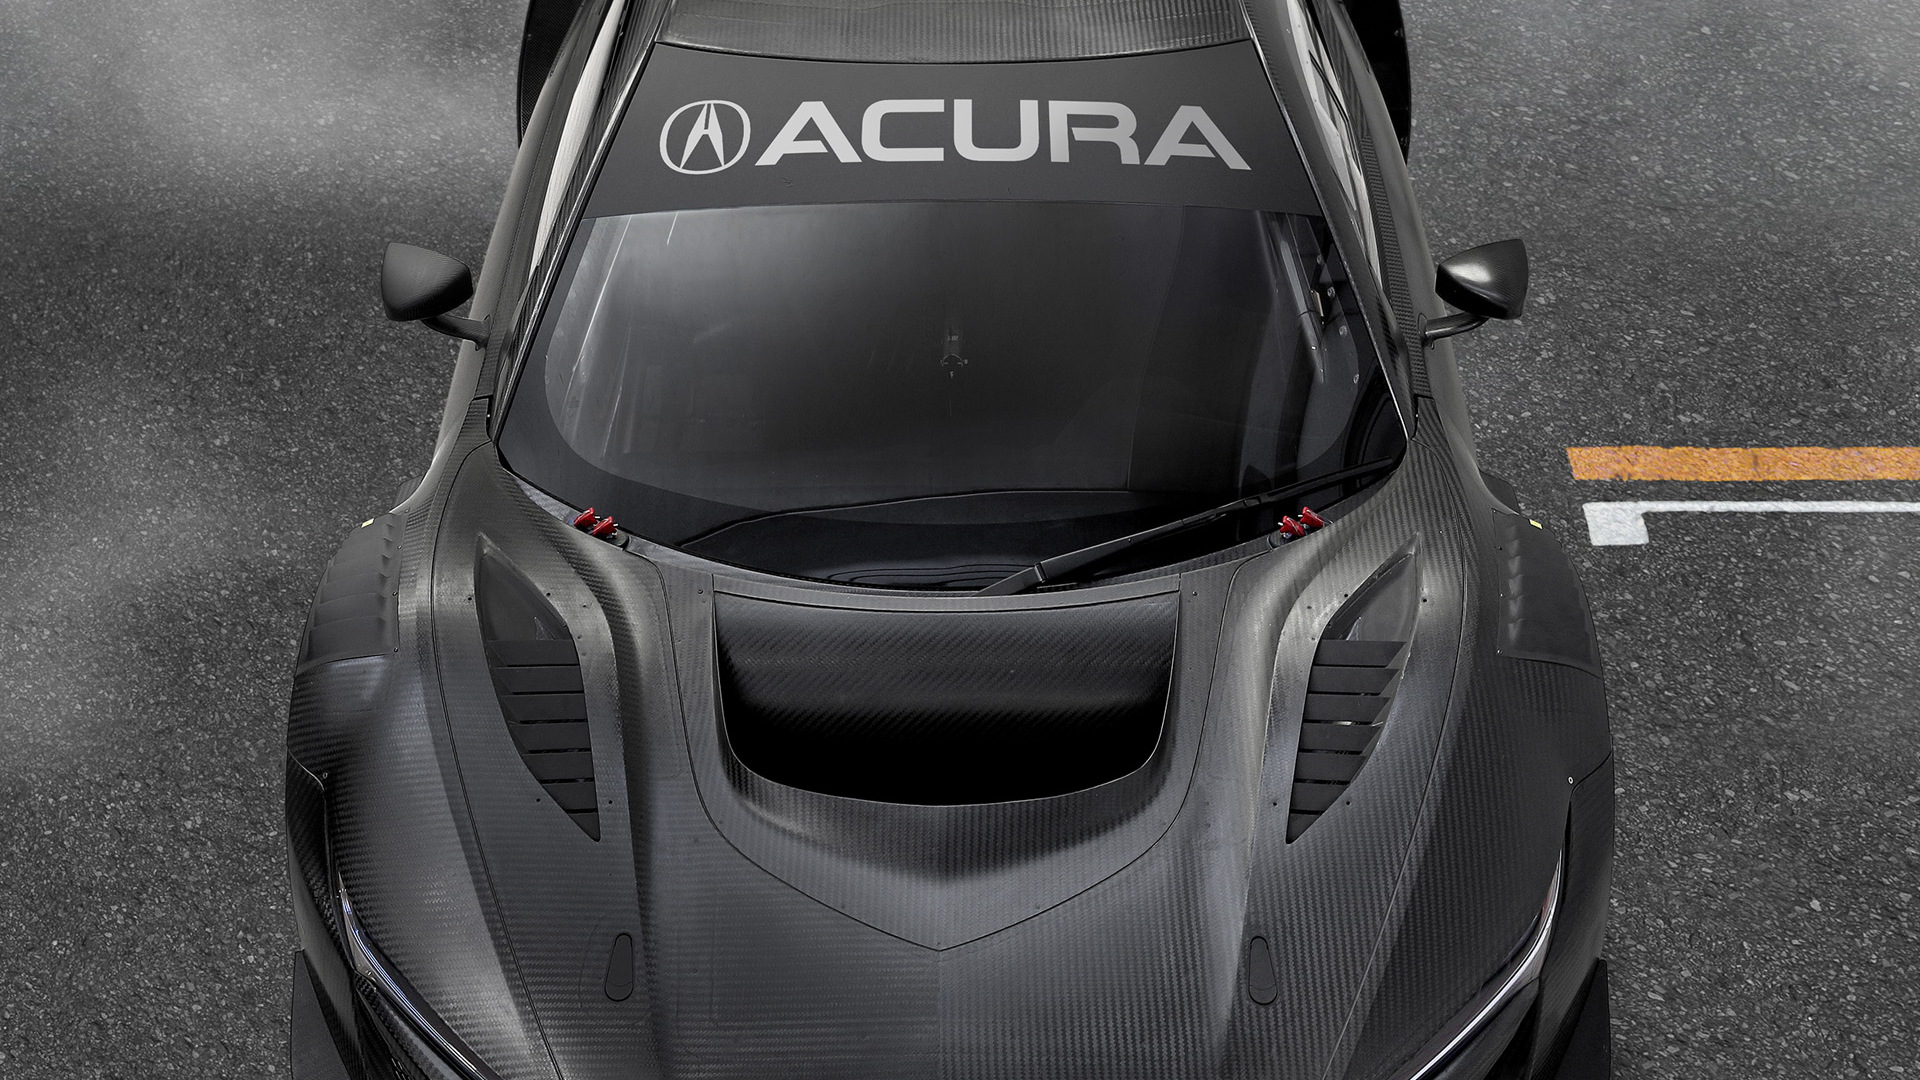 2019 Acura NSX GT3 Evo race car